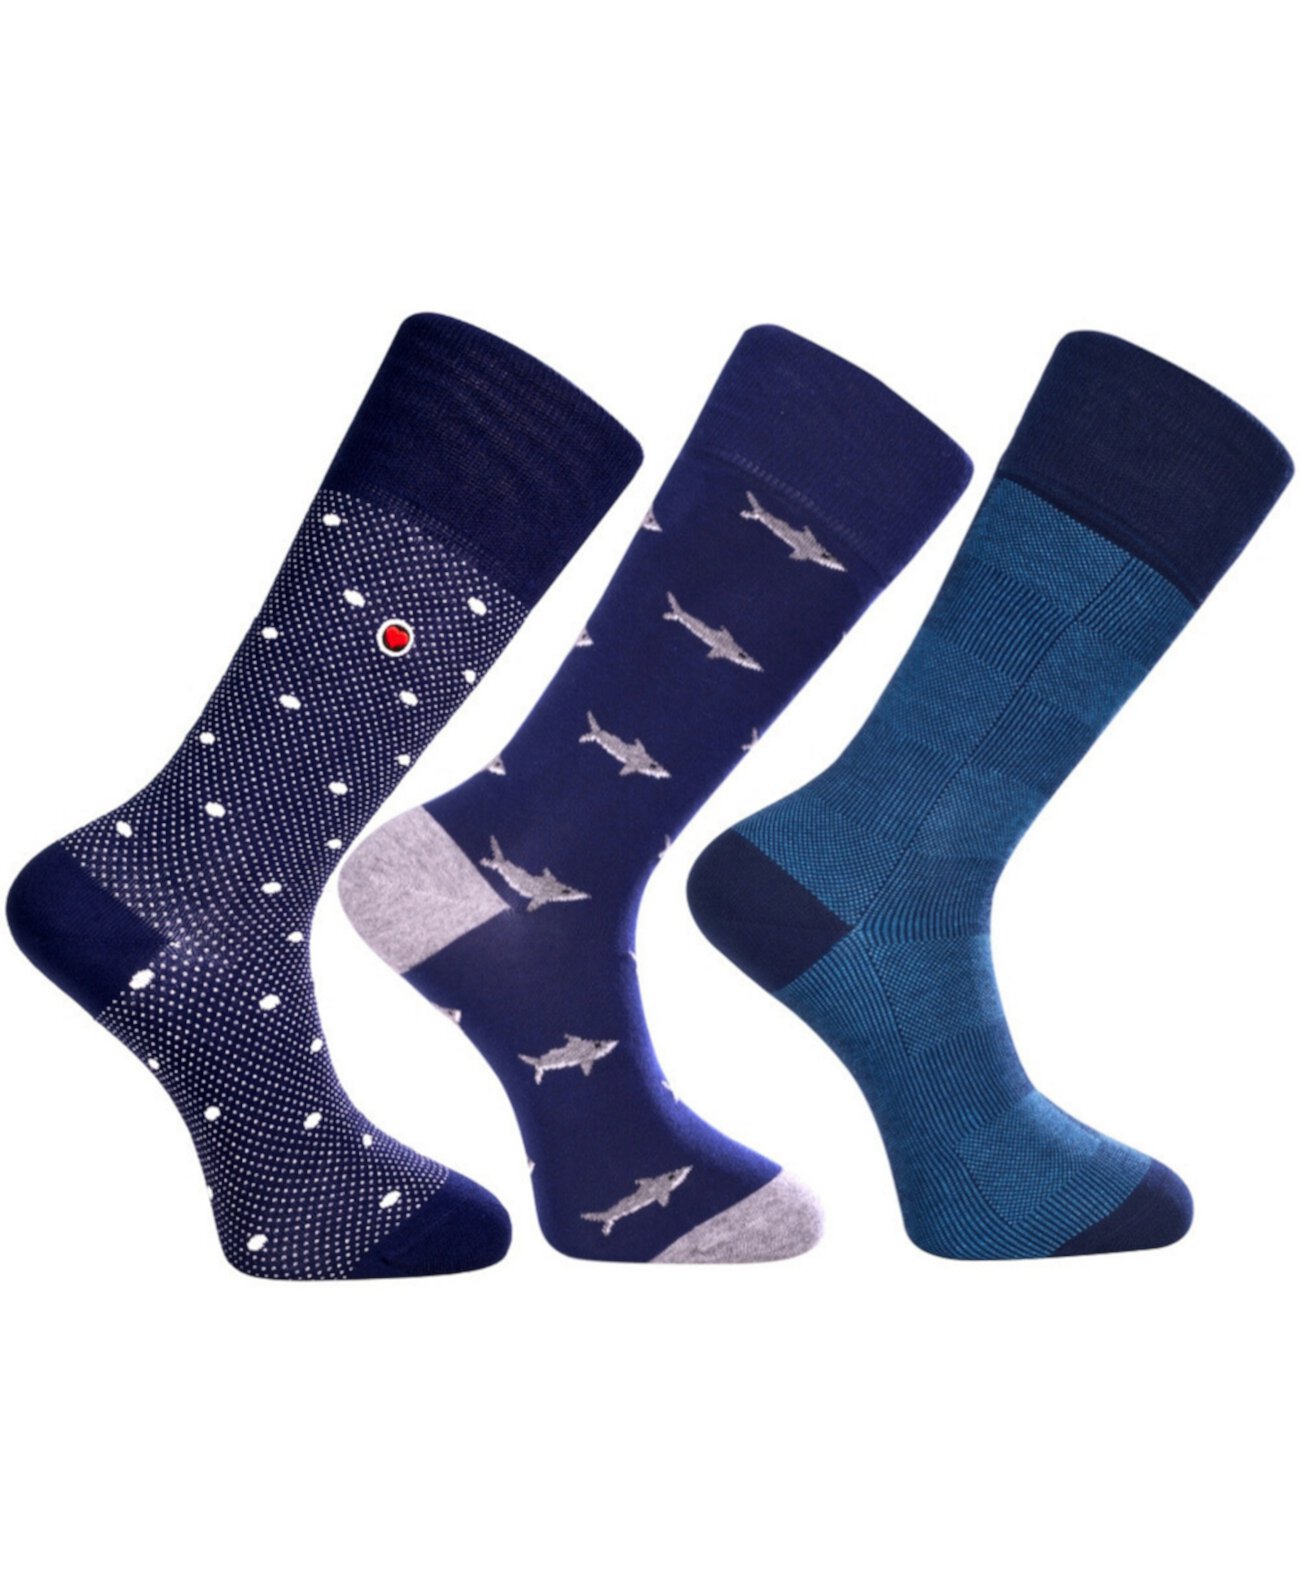 Мужские роскошные классические носки до середины икры с бесшовным дизайном носка Atlantic Bundle, 3 шт. Love Sock Company